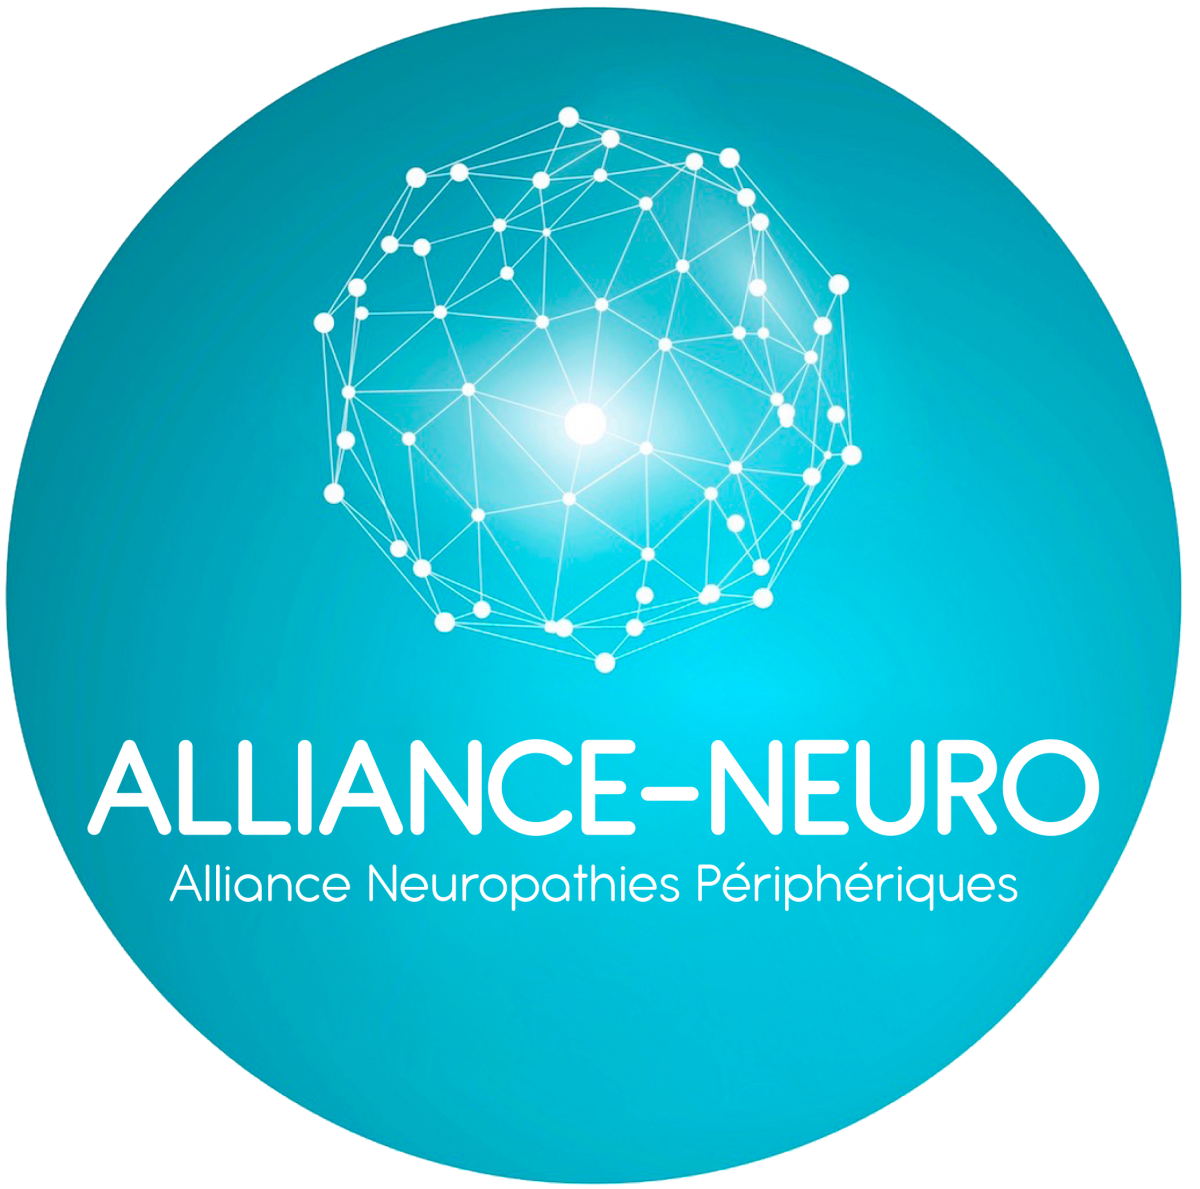 Alliance Française des associations de patients atteints de neuropathies périphériques